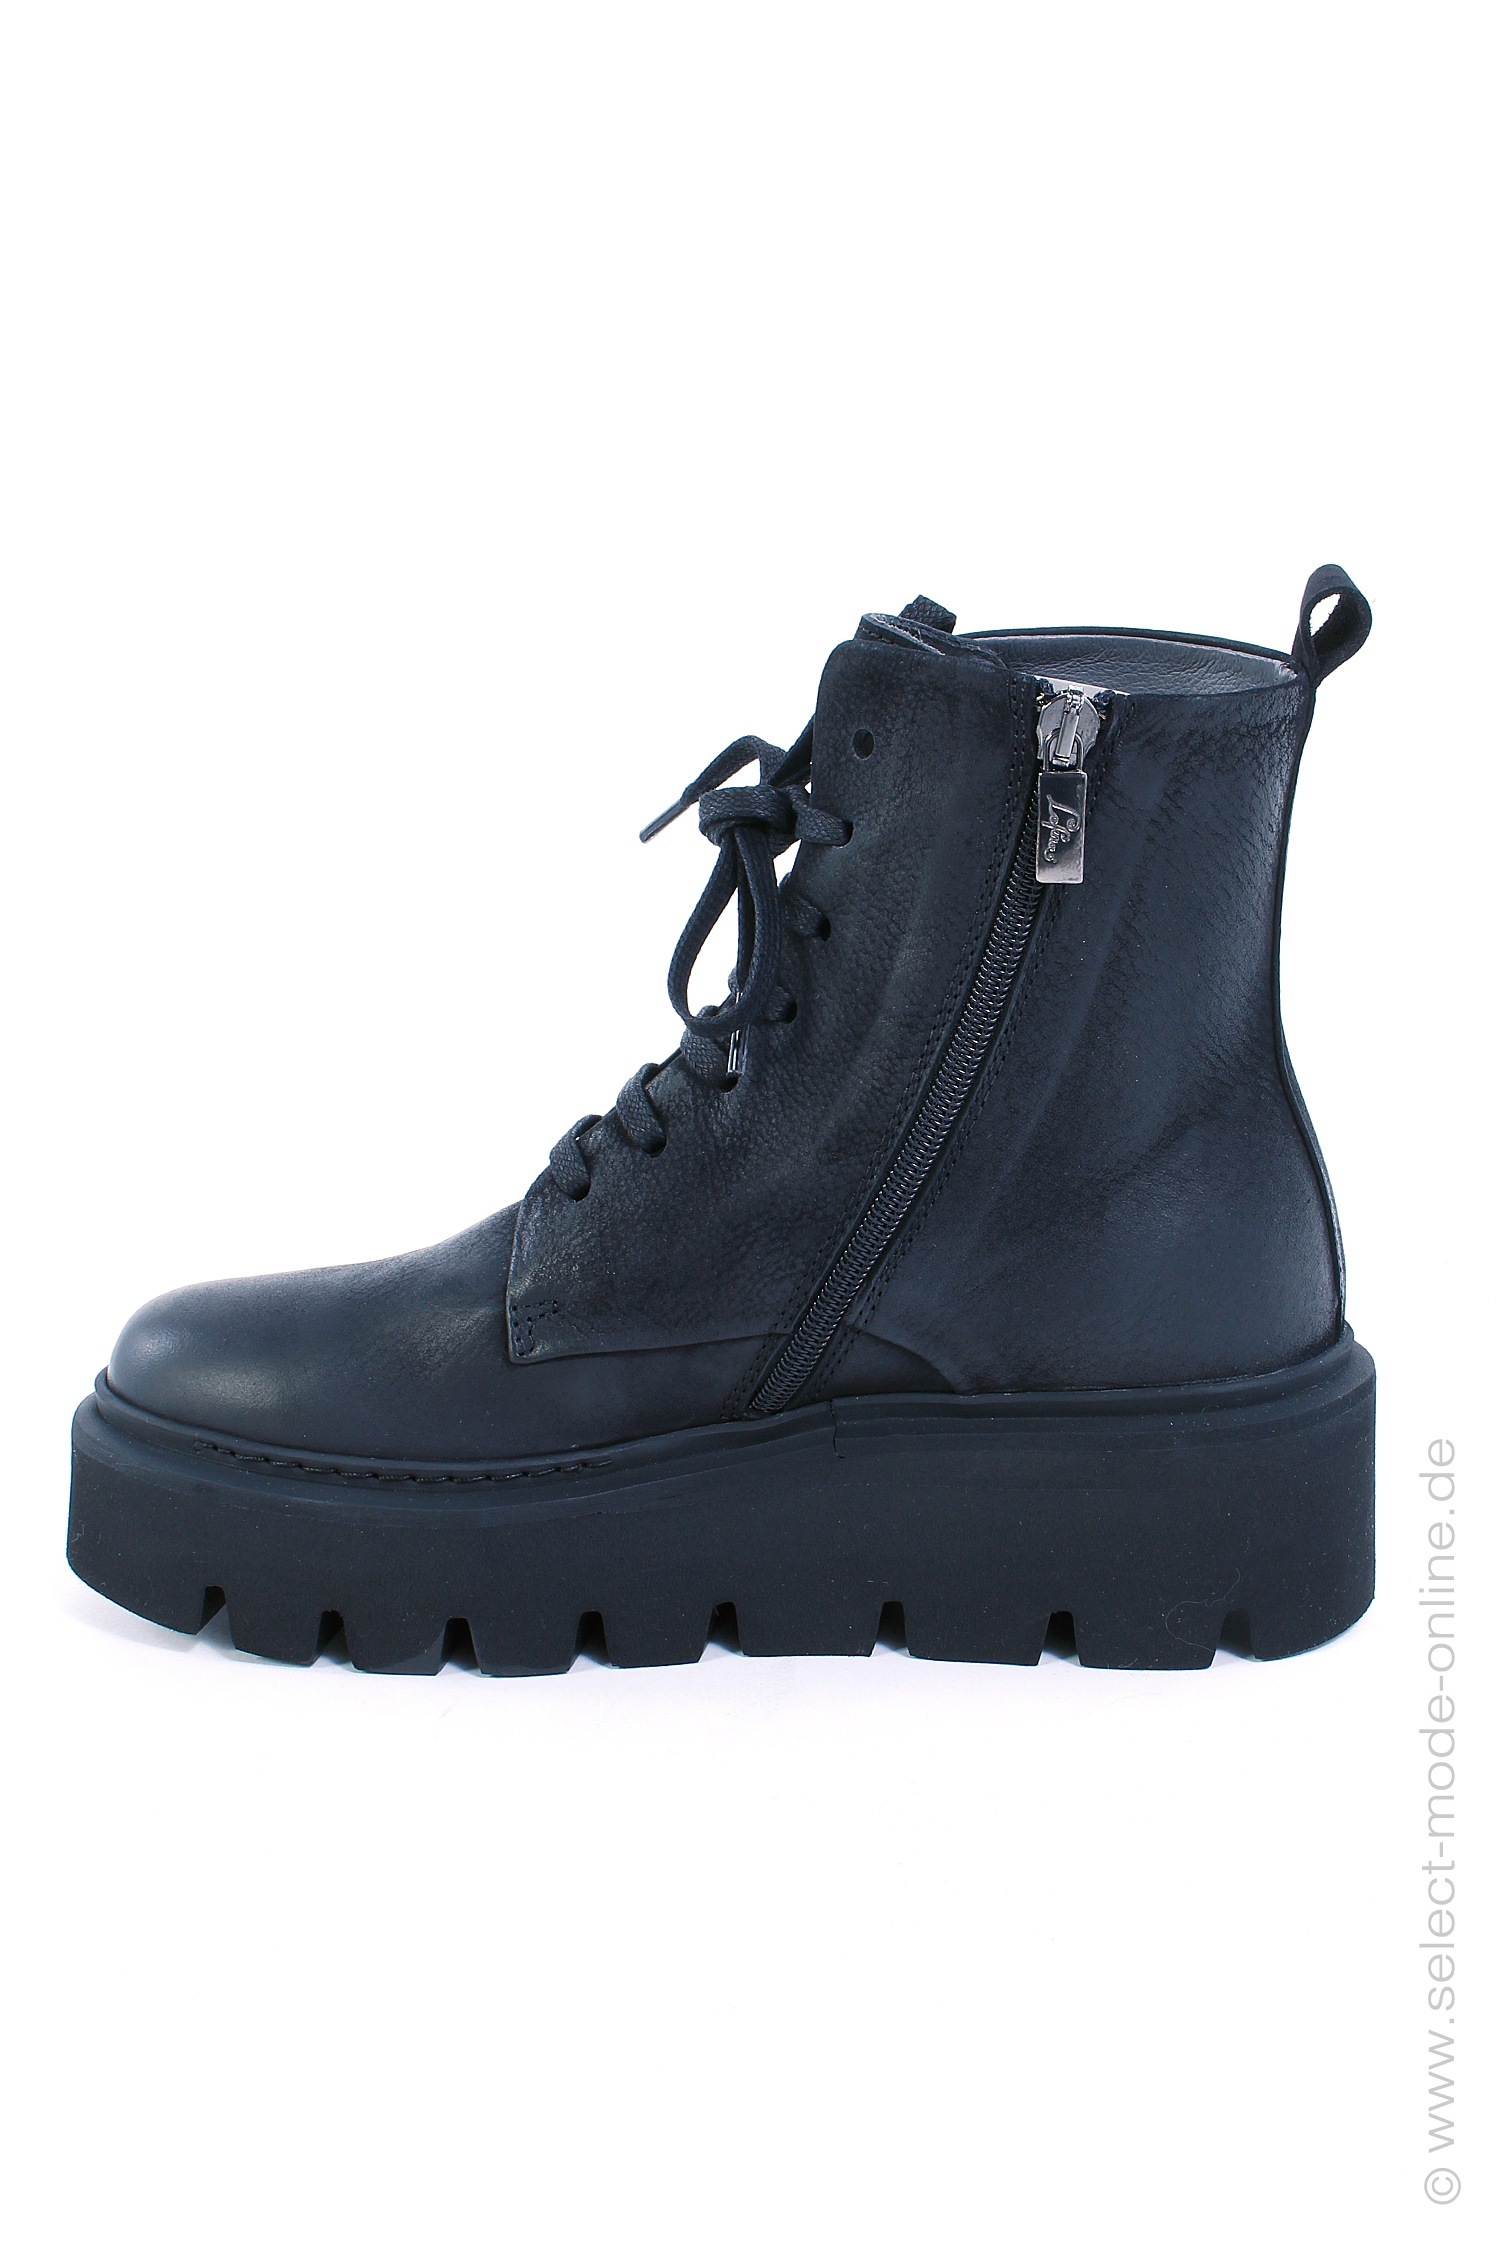 Leder Boots - schwarz - 3144